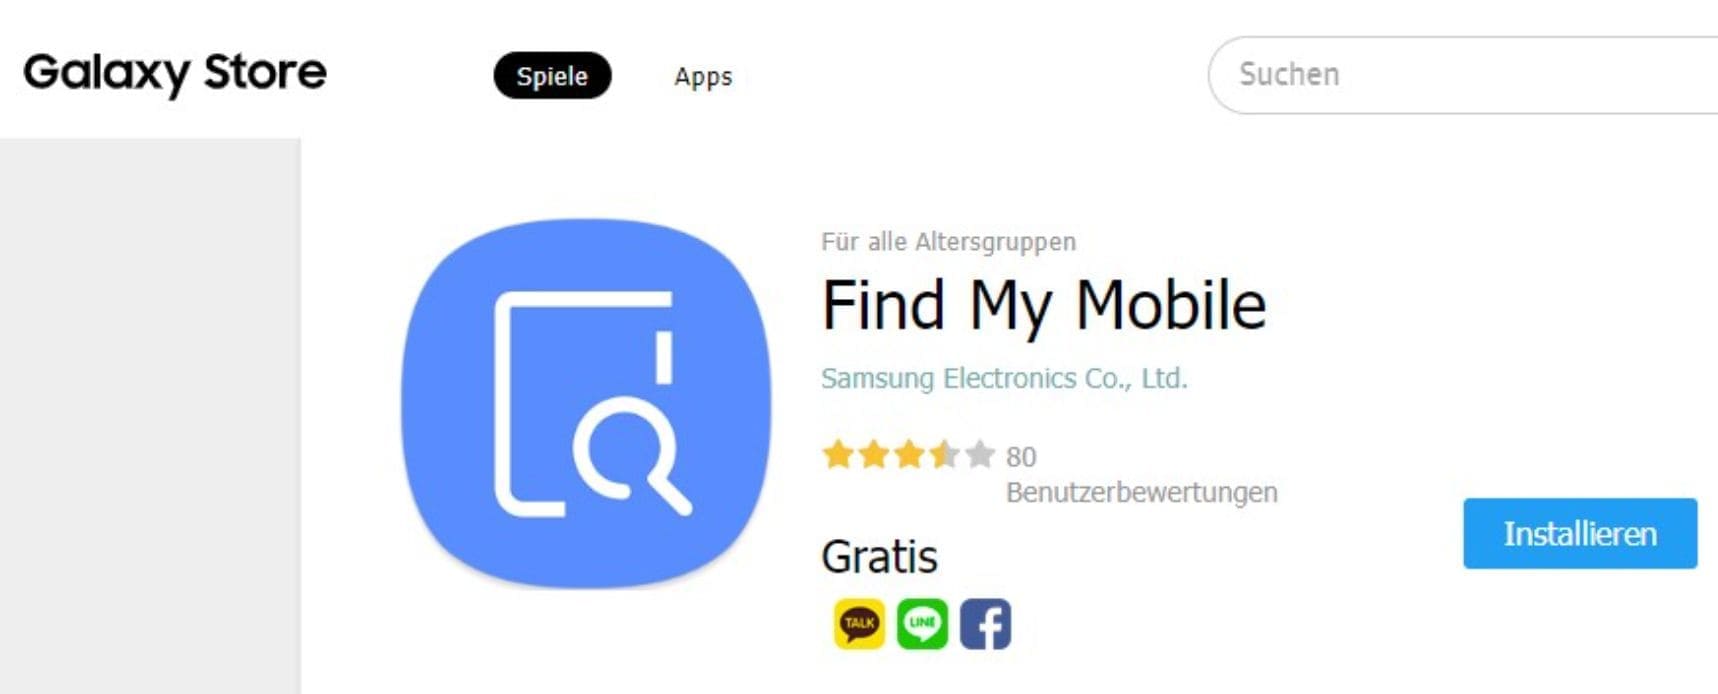 3,5 Sterne Bewertung von Find My Mobile im Galaxy Store